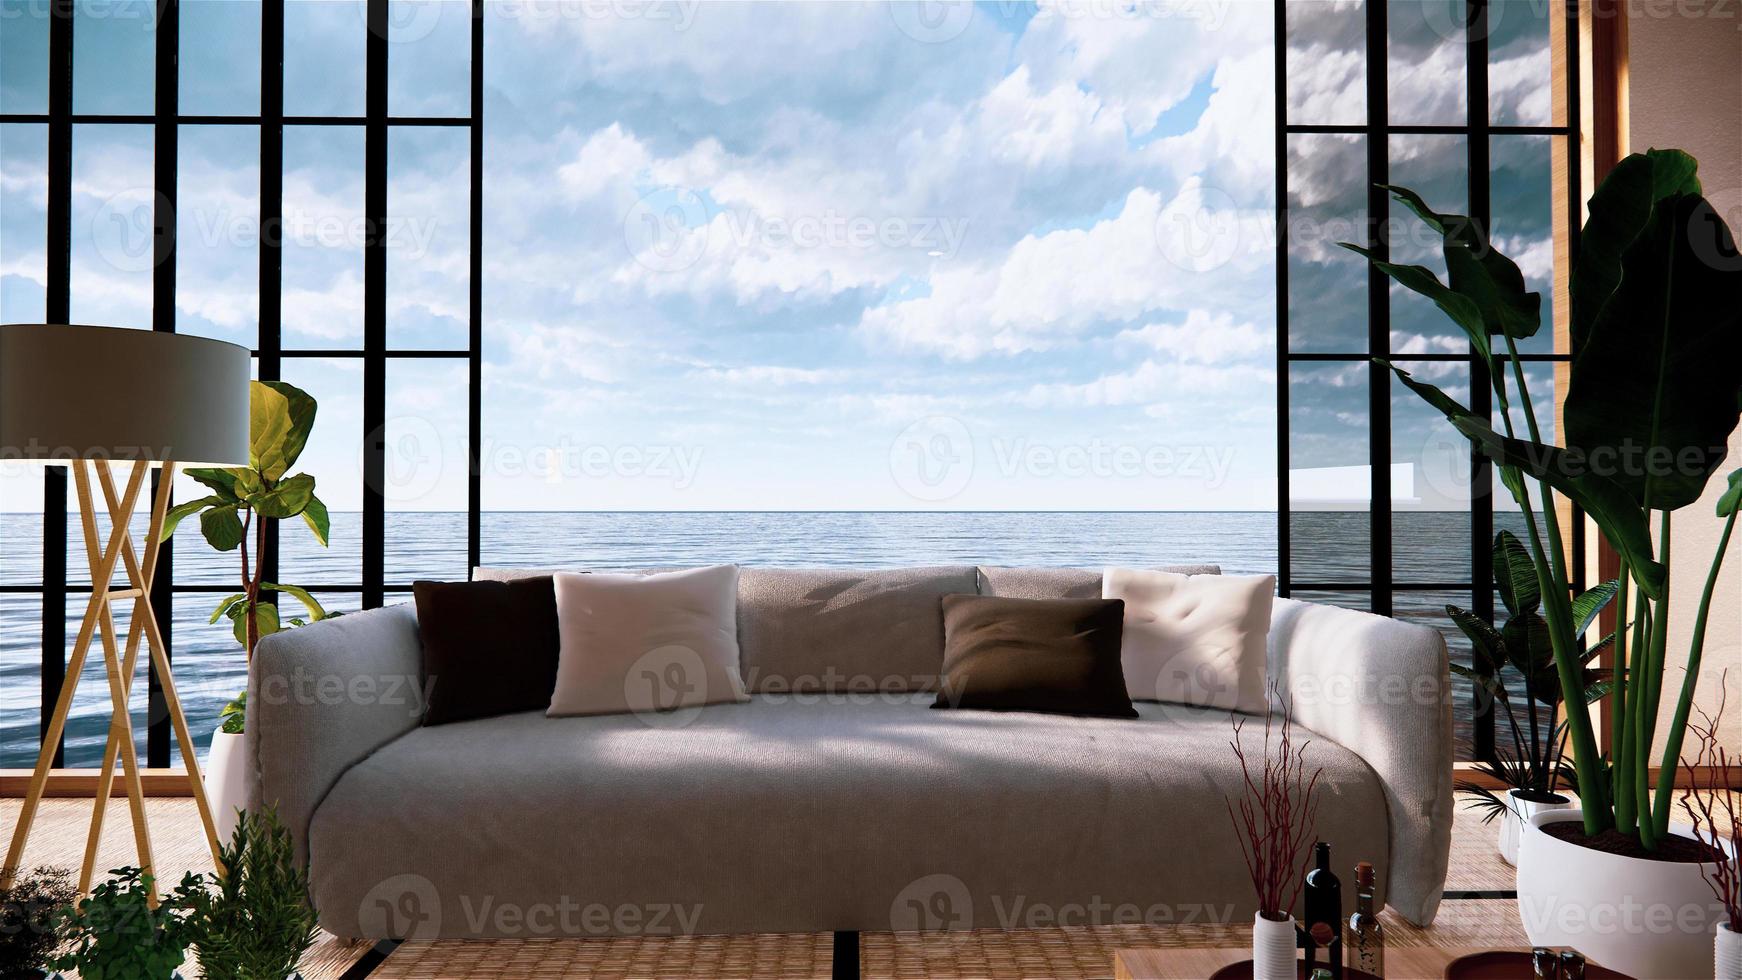 soffa på tomt rum japansk design på tatamimatta, 3D-rendering foto